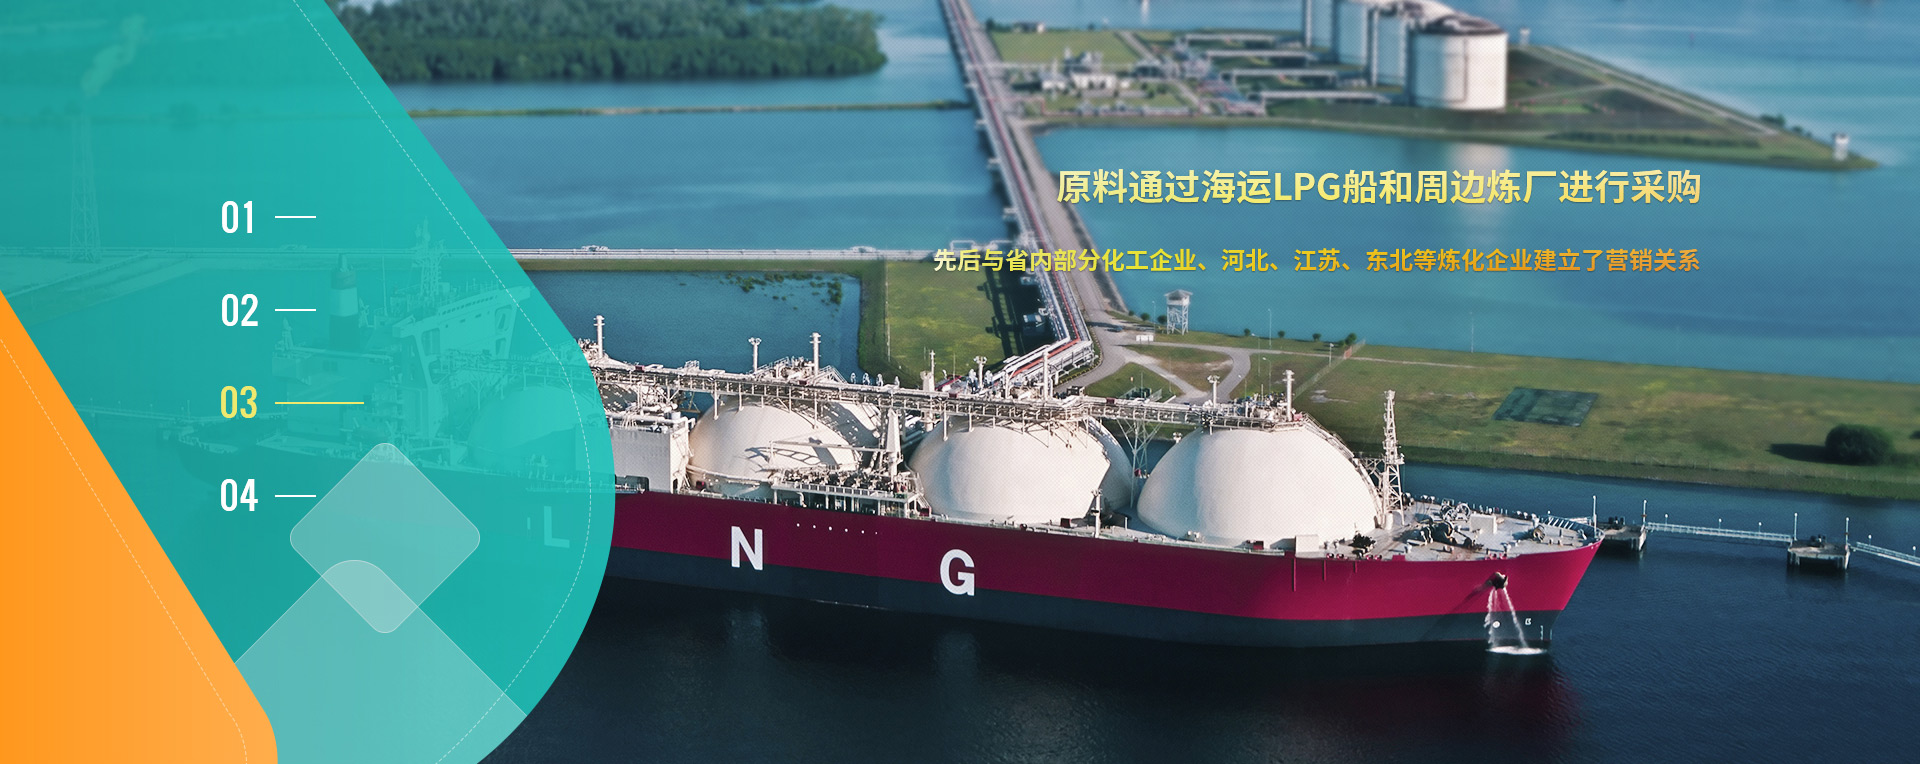 原料通过海运LPG船和周边炼厂进行采购